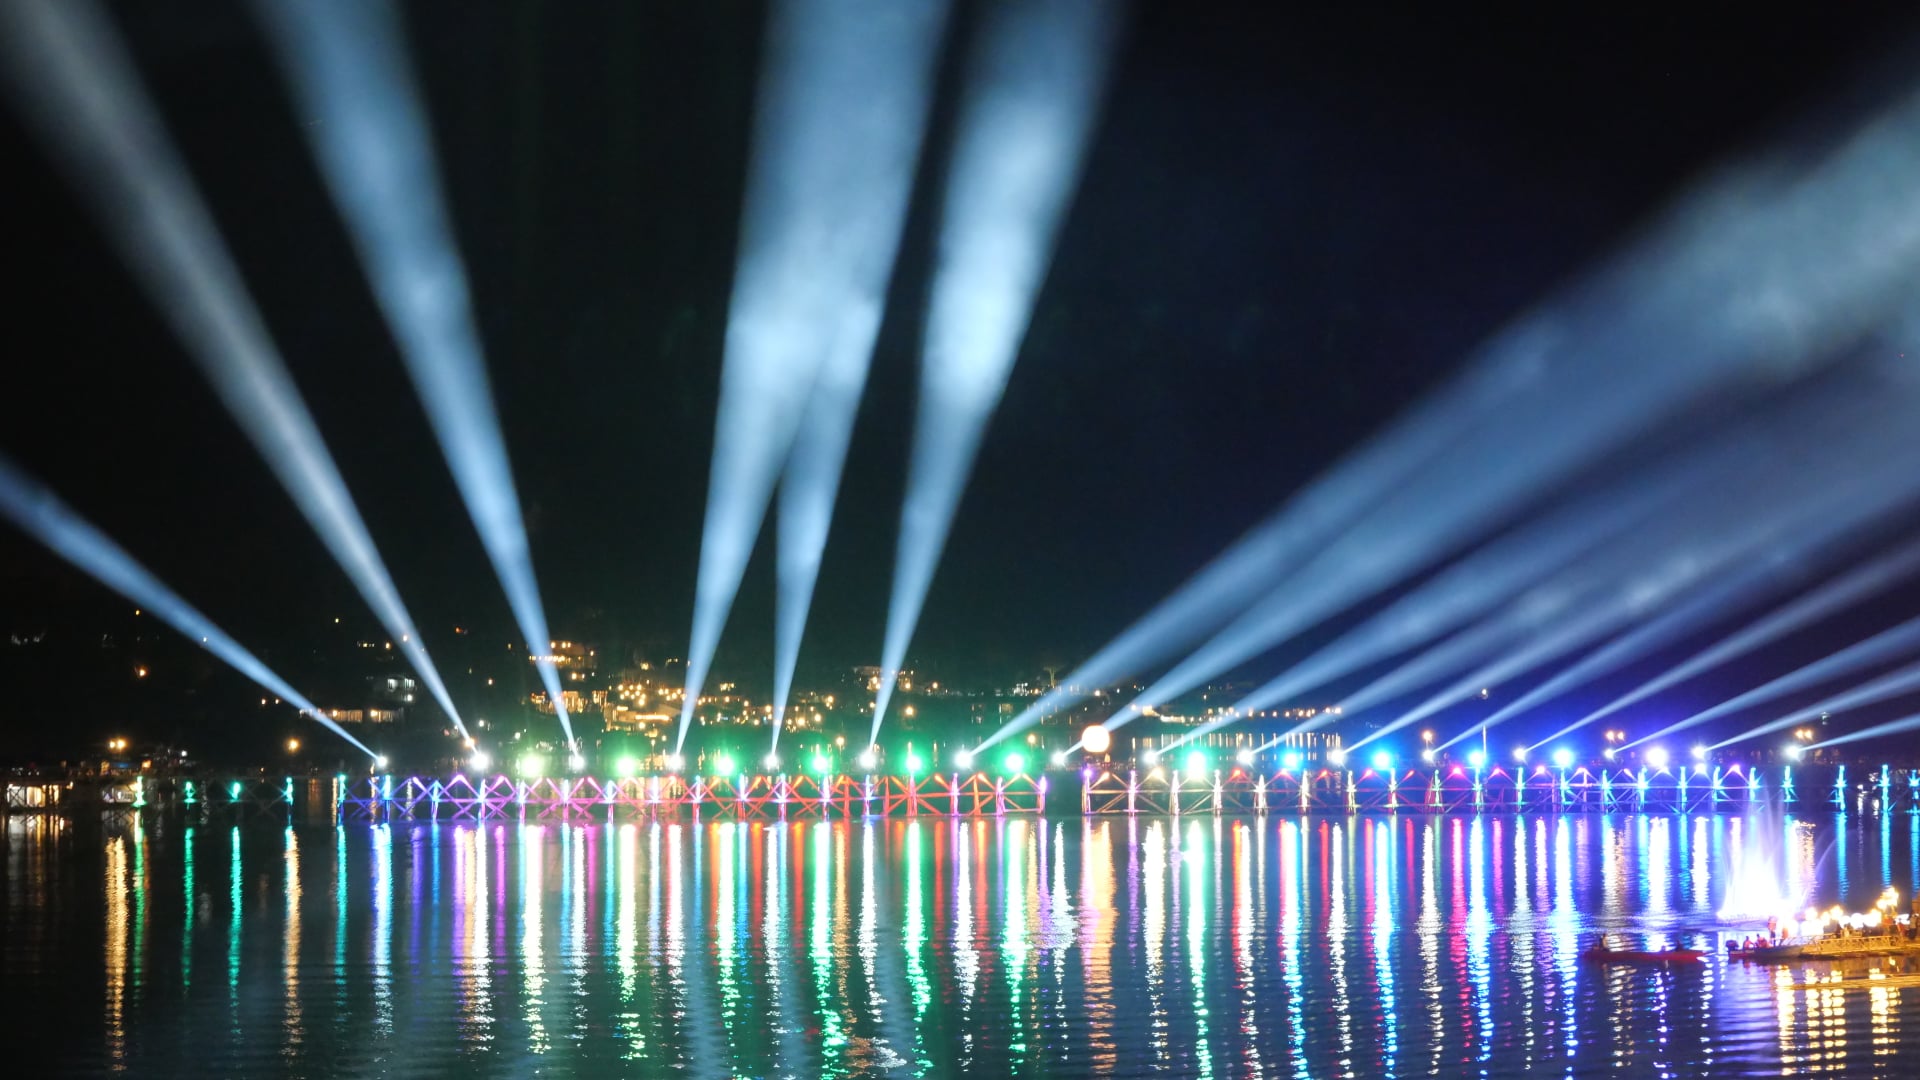 ประชาชนในอำเภอสังขละบุรีและนักท่องเที่ยวร่วมเคาท์ดาวน์ขึ้นปีใหม่ 2565 กับงานมหัศจรรย์สะพานมอญ